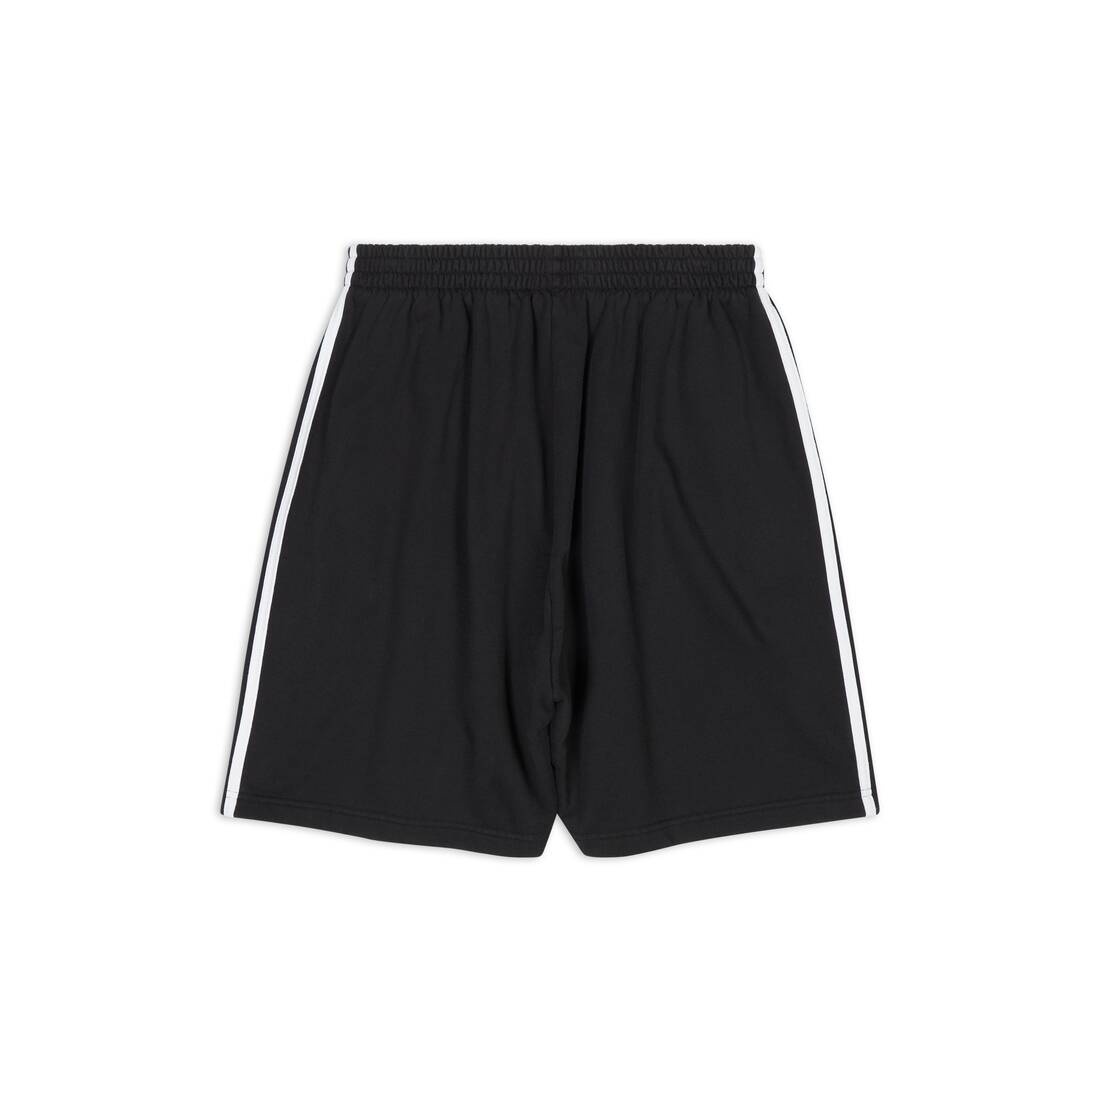 Balenciaga / Adidas Large Shorts in Black - 6